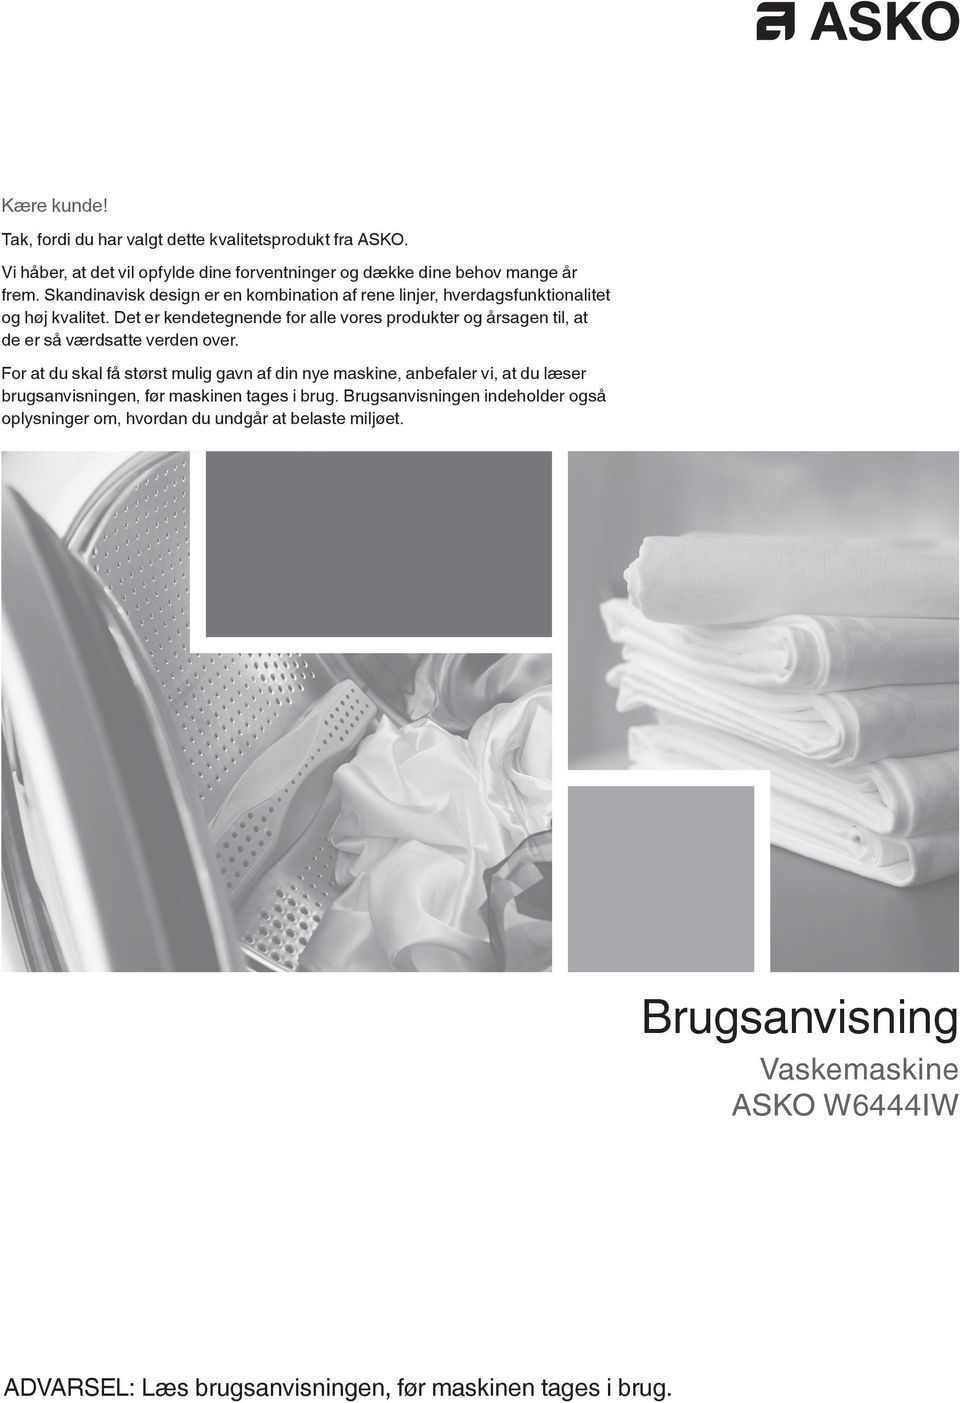 Brugsanvisning Vaskemaskine ASKO W6444IW. ADVARSEL: Læs brugsanvisningen,  før maskinen tages i brug. Kære kunde! - PDF Gratis download